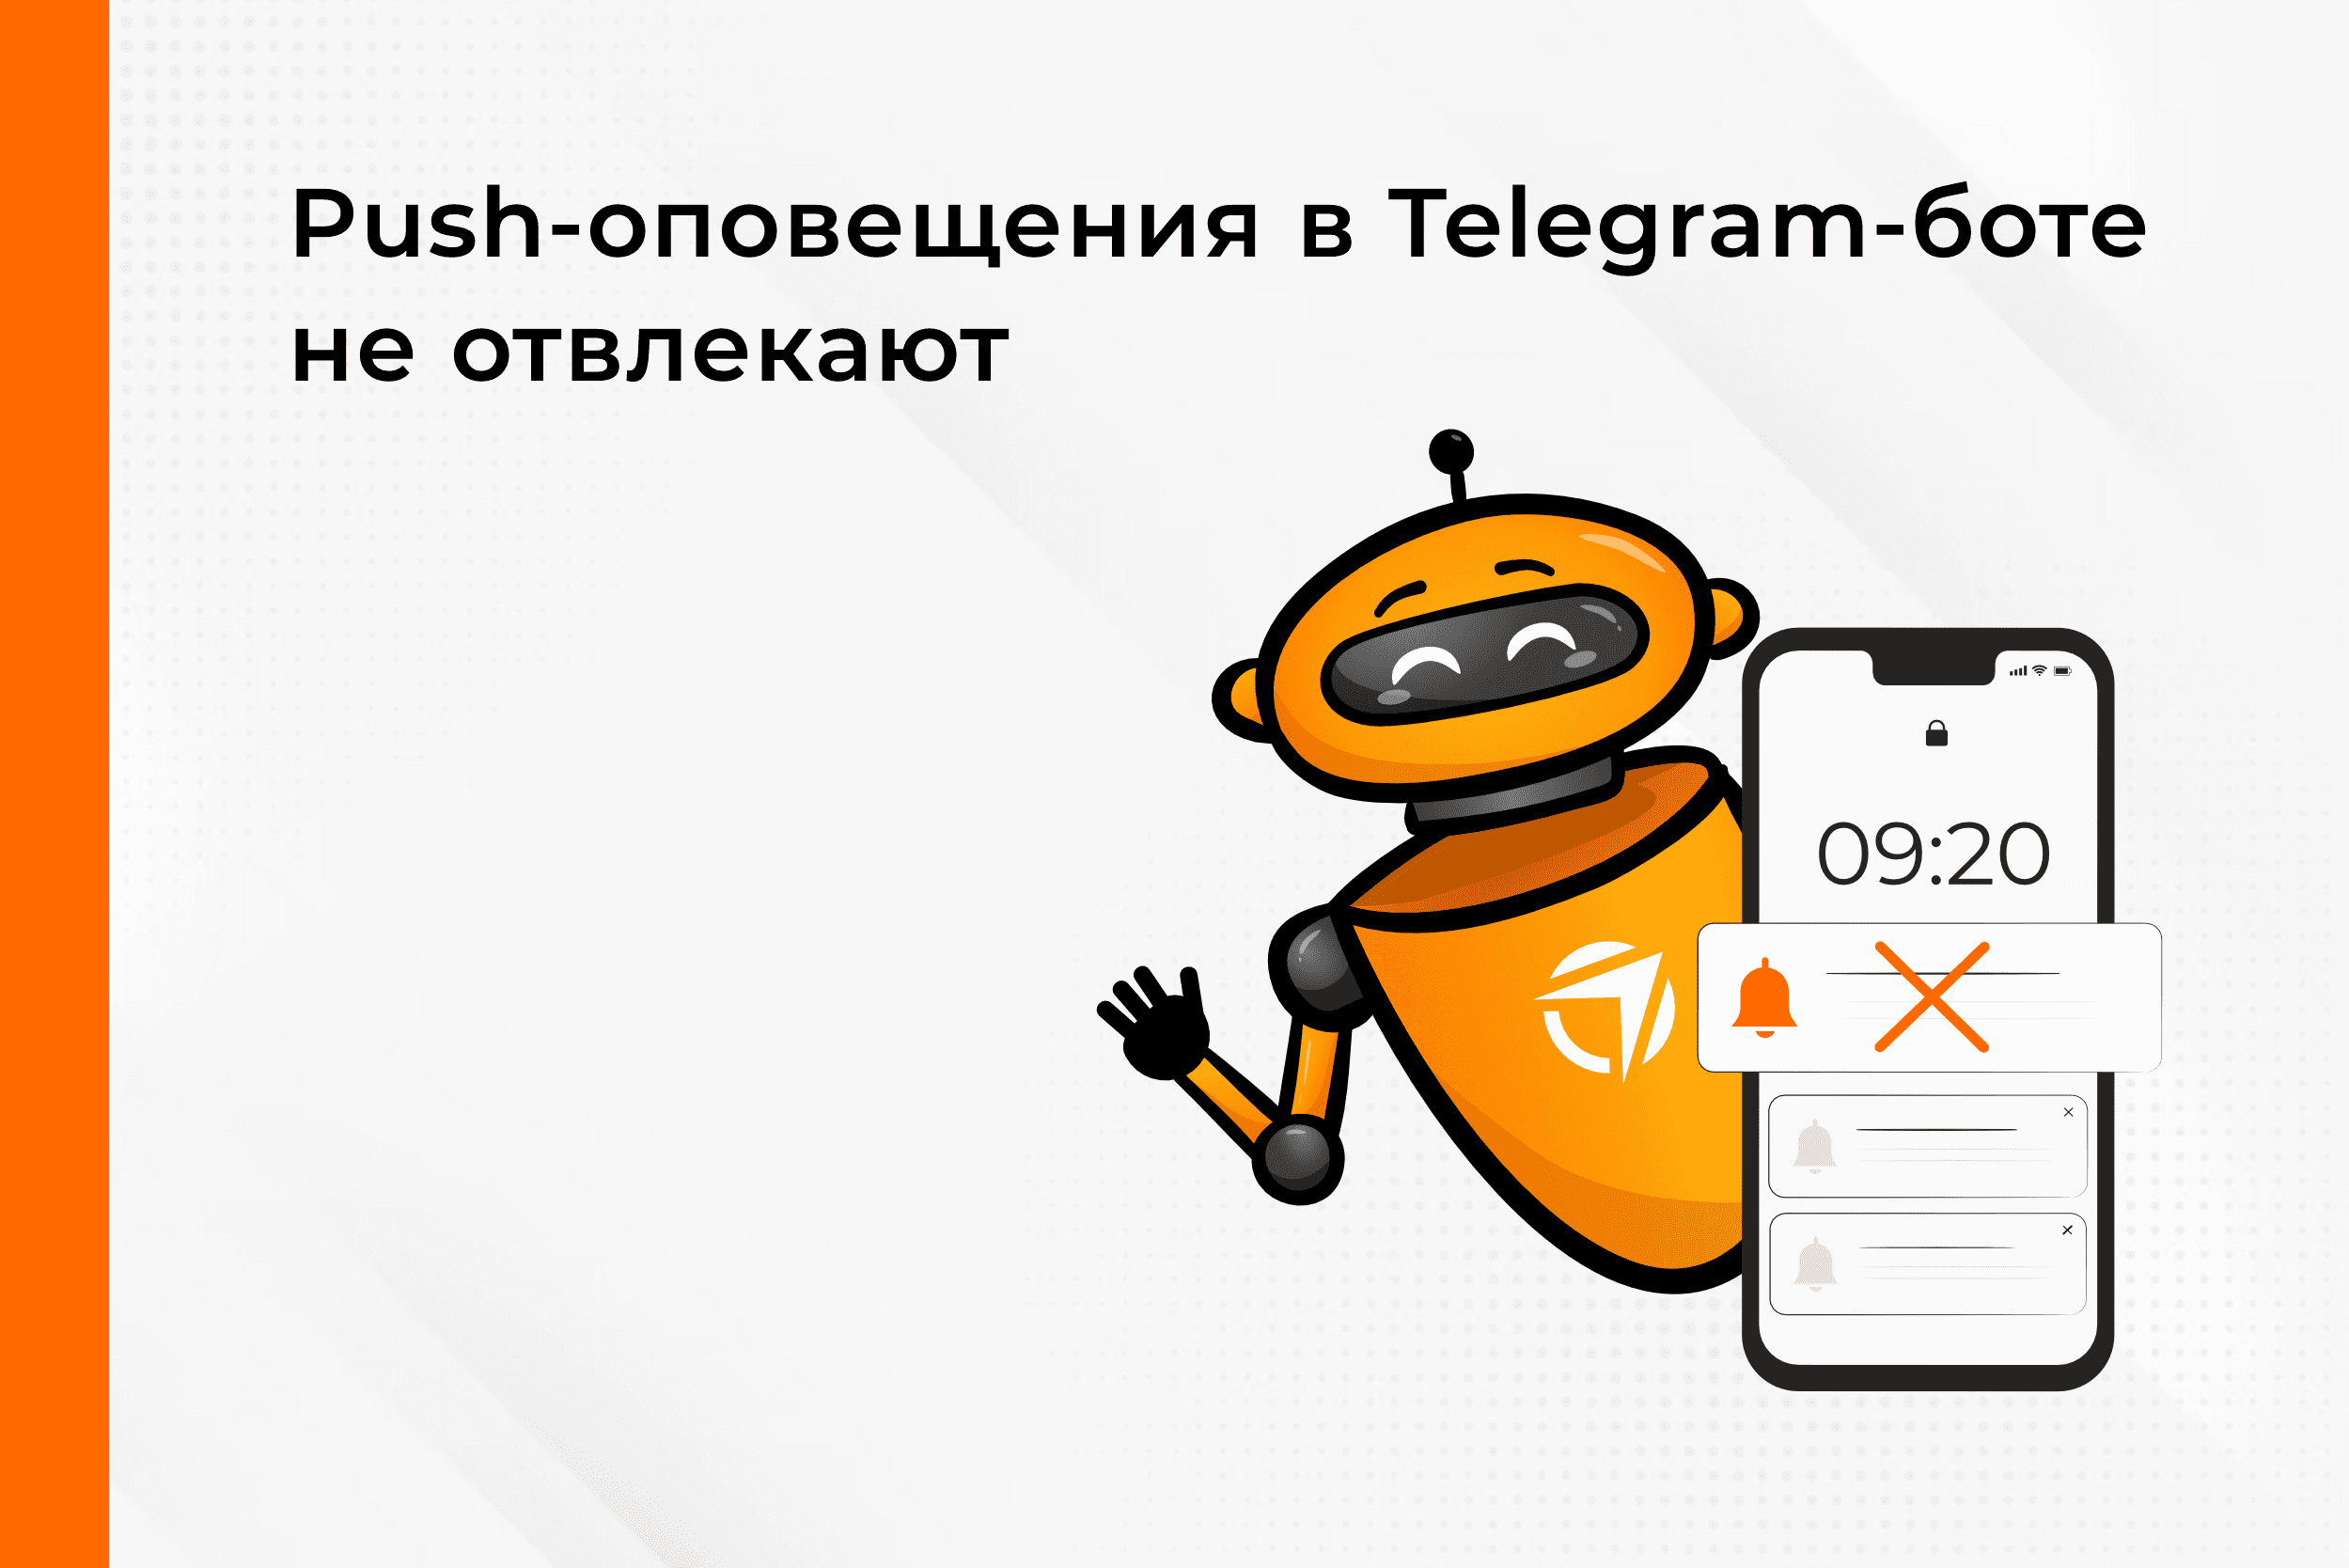 Постоянно совершенствуем наш Telegram-бот